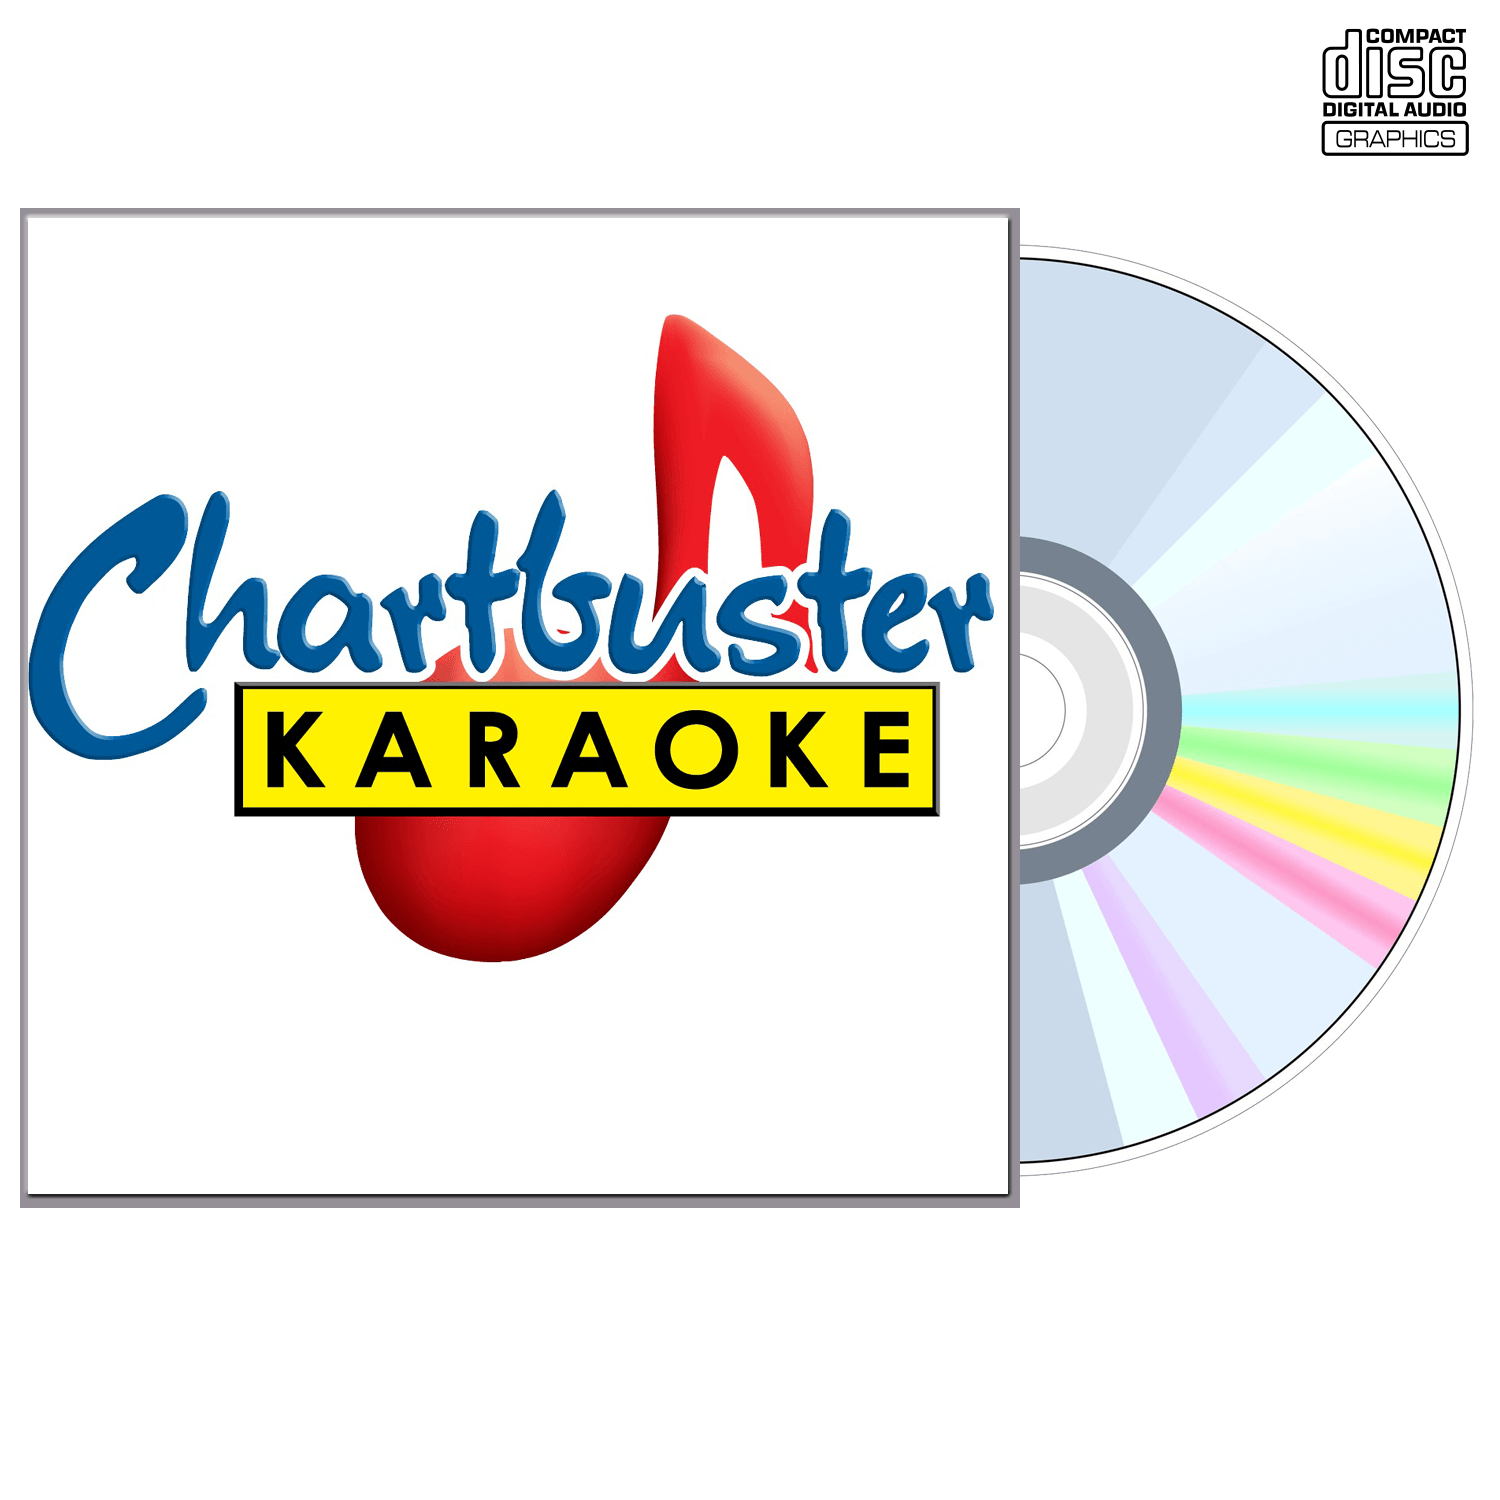 David Lee Roth,van Halen - CD+G - Chartbuster Karaoke - Karaoke Home Entertainment